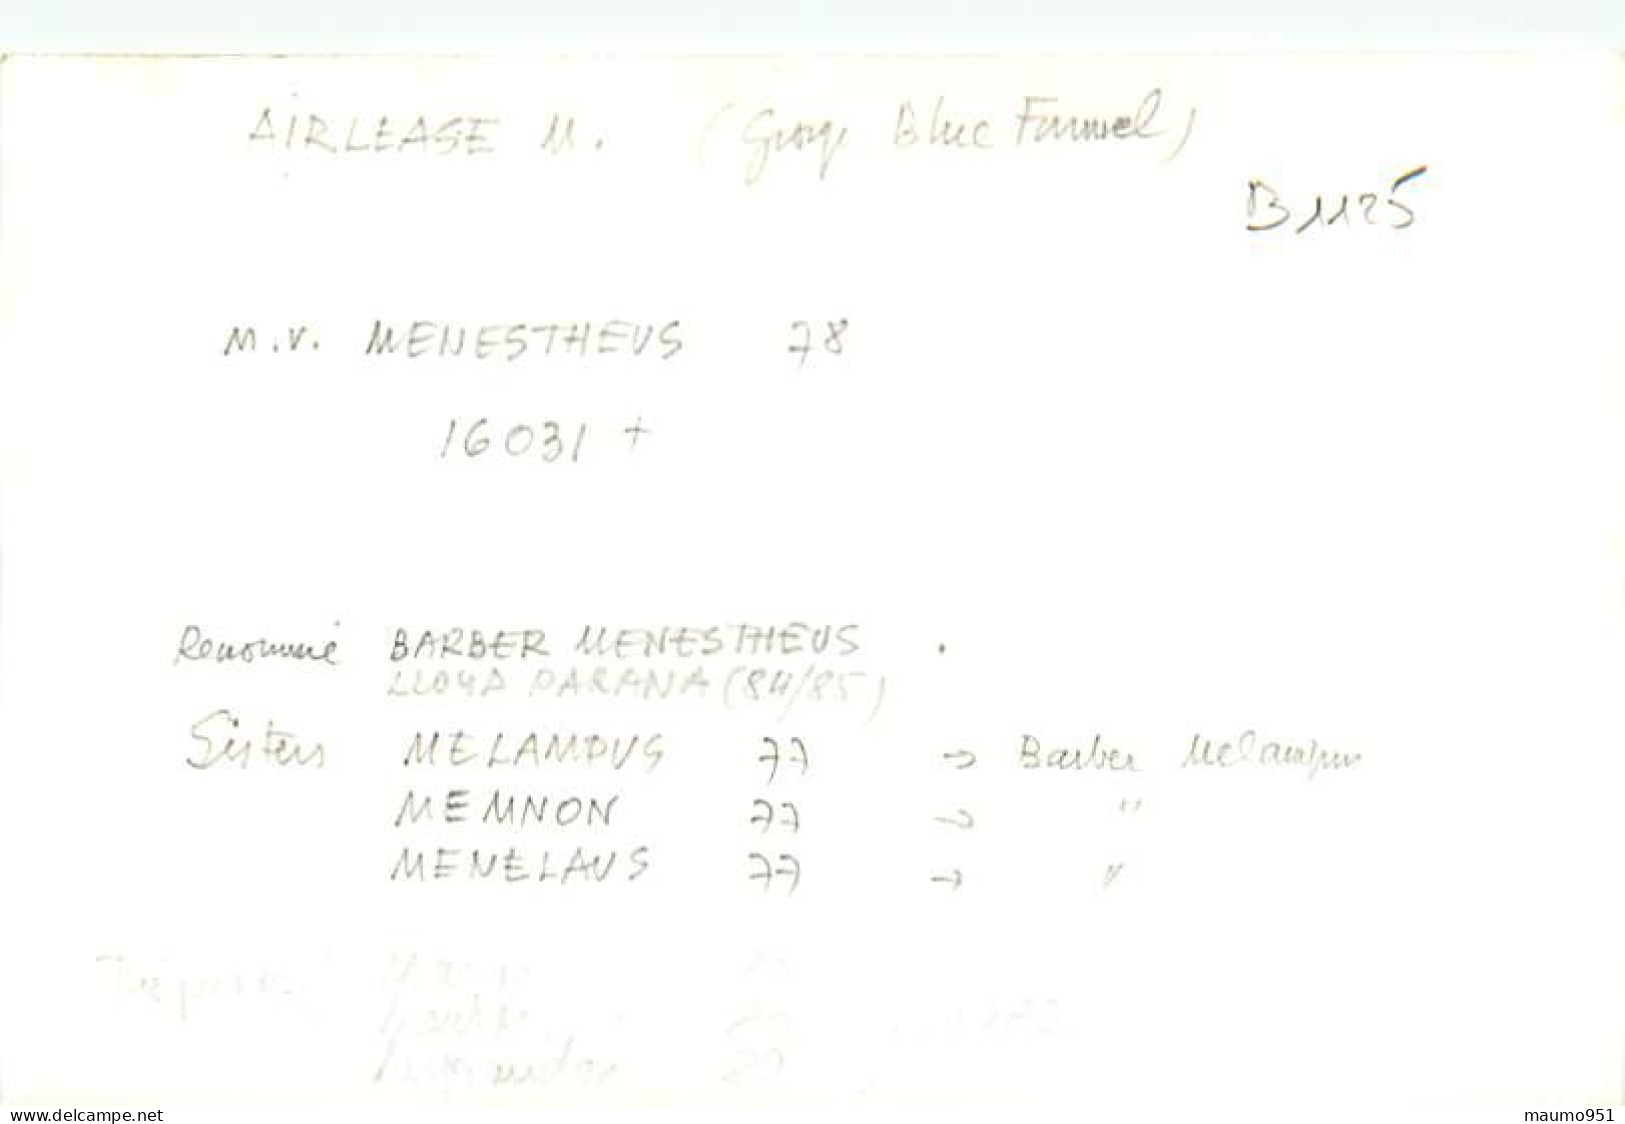 1125 CLICHE BATEAU PREFIXE M.V. - LE MENESTHEUS DE 1978 - CATEGORIE 16031 TONNES - FORMAT CPA N° B 1125 - Schiffe